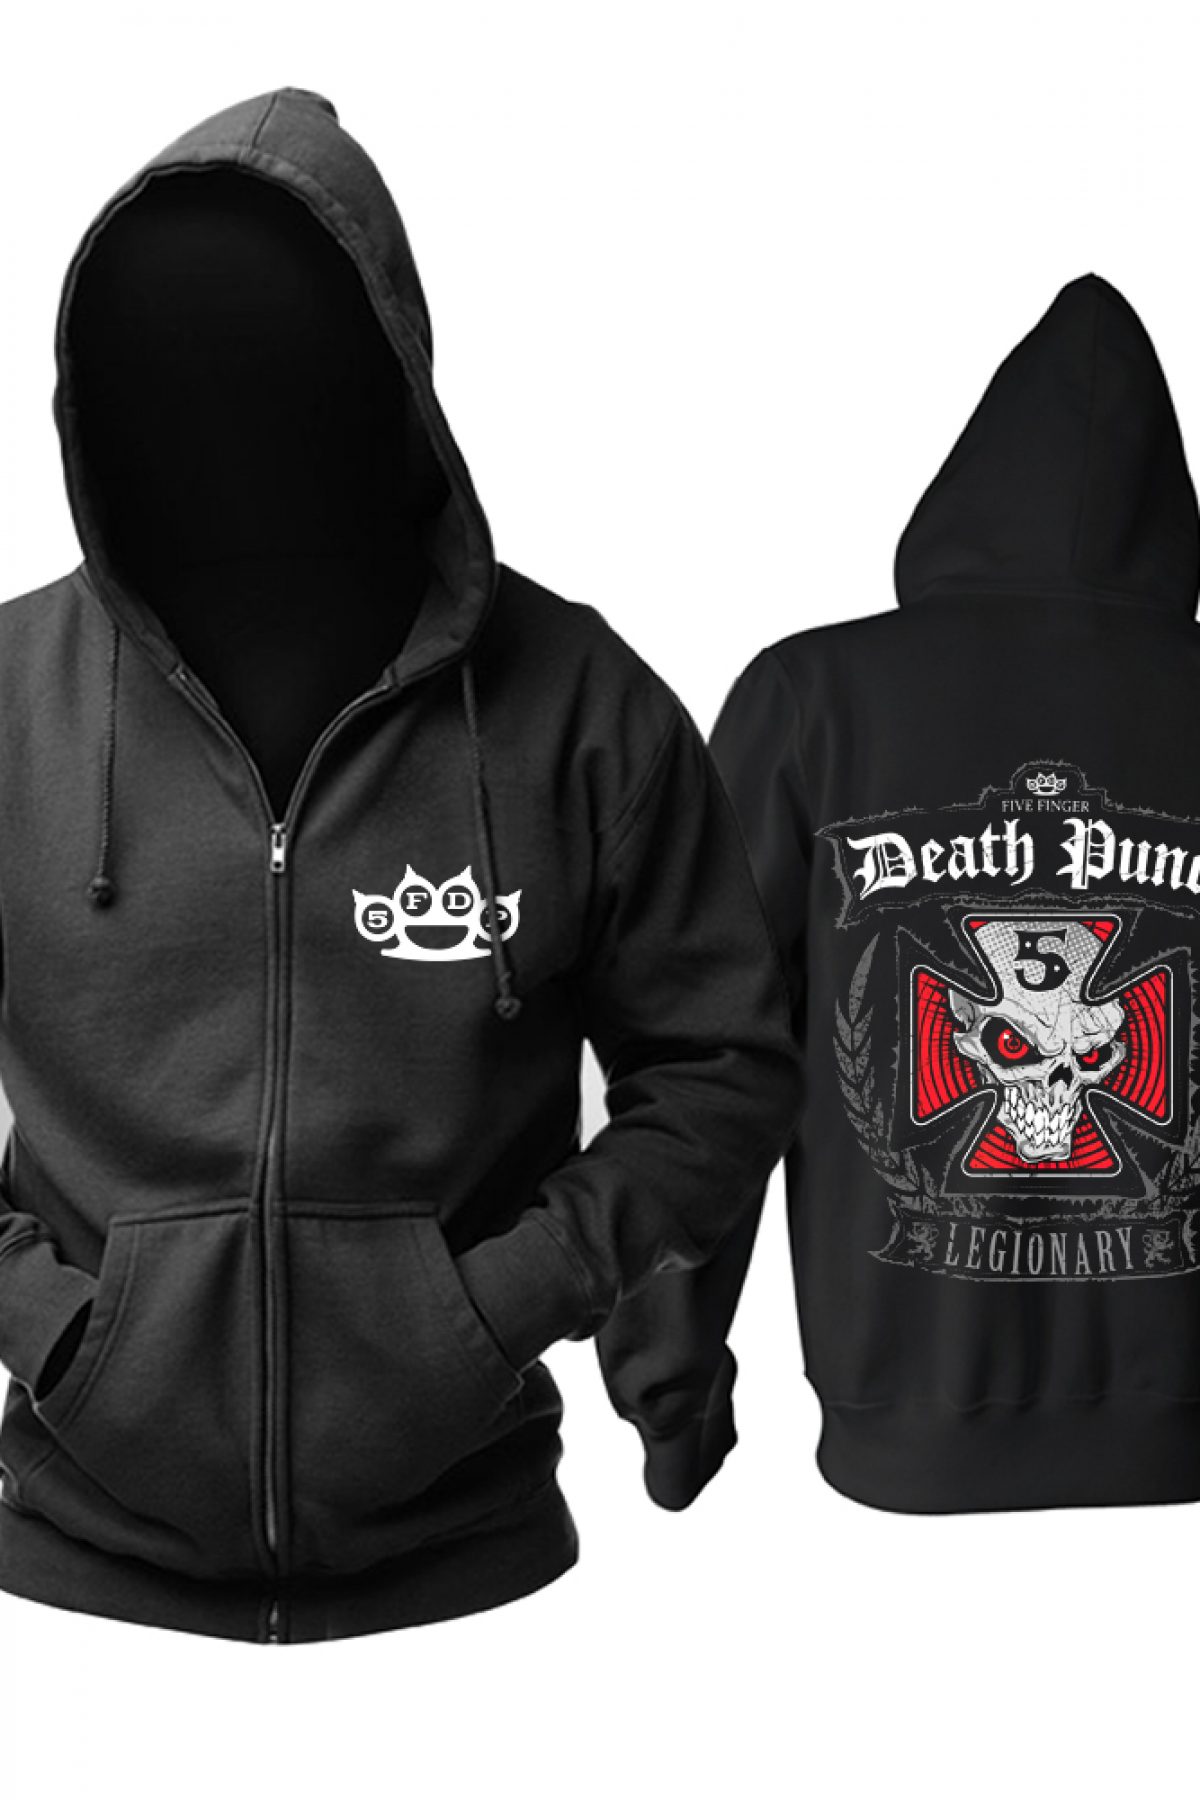 Buy Hoodie Five Finger Death Punch Legionary - IdolStore